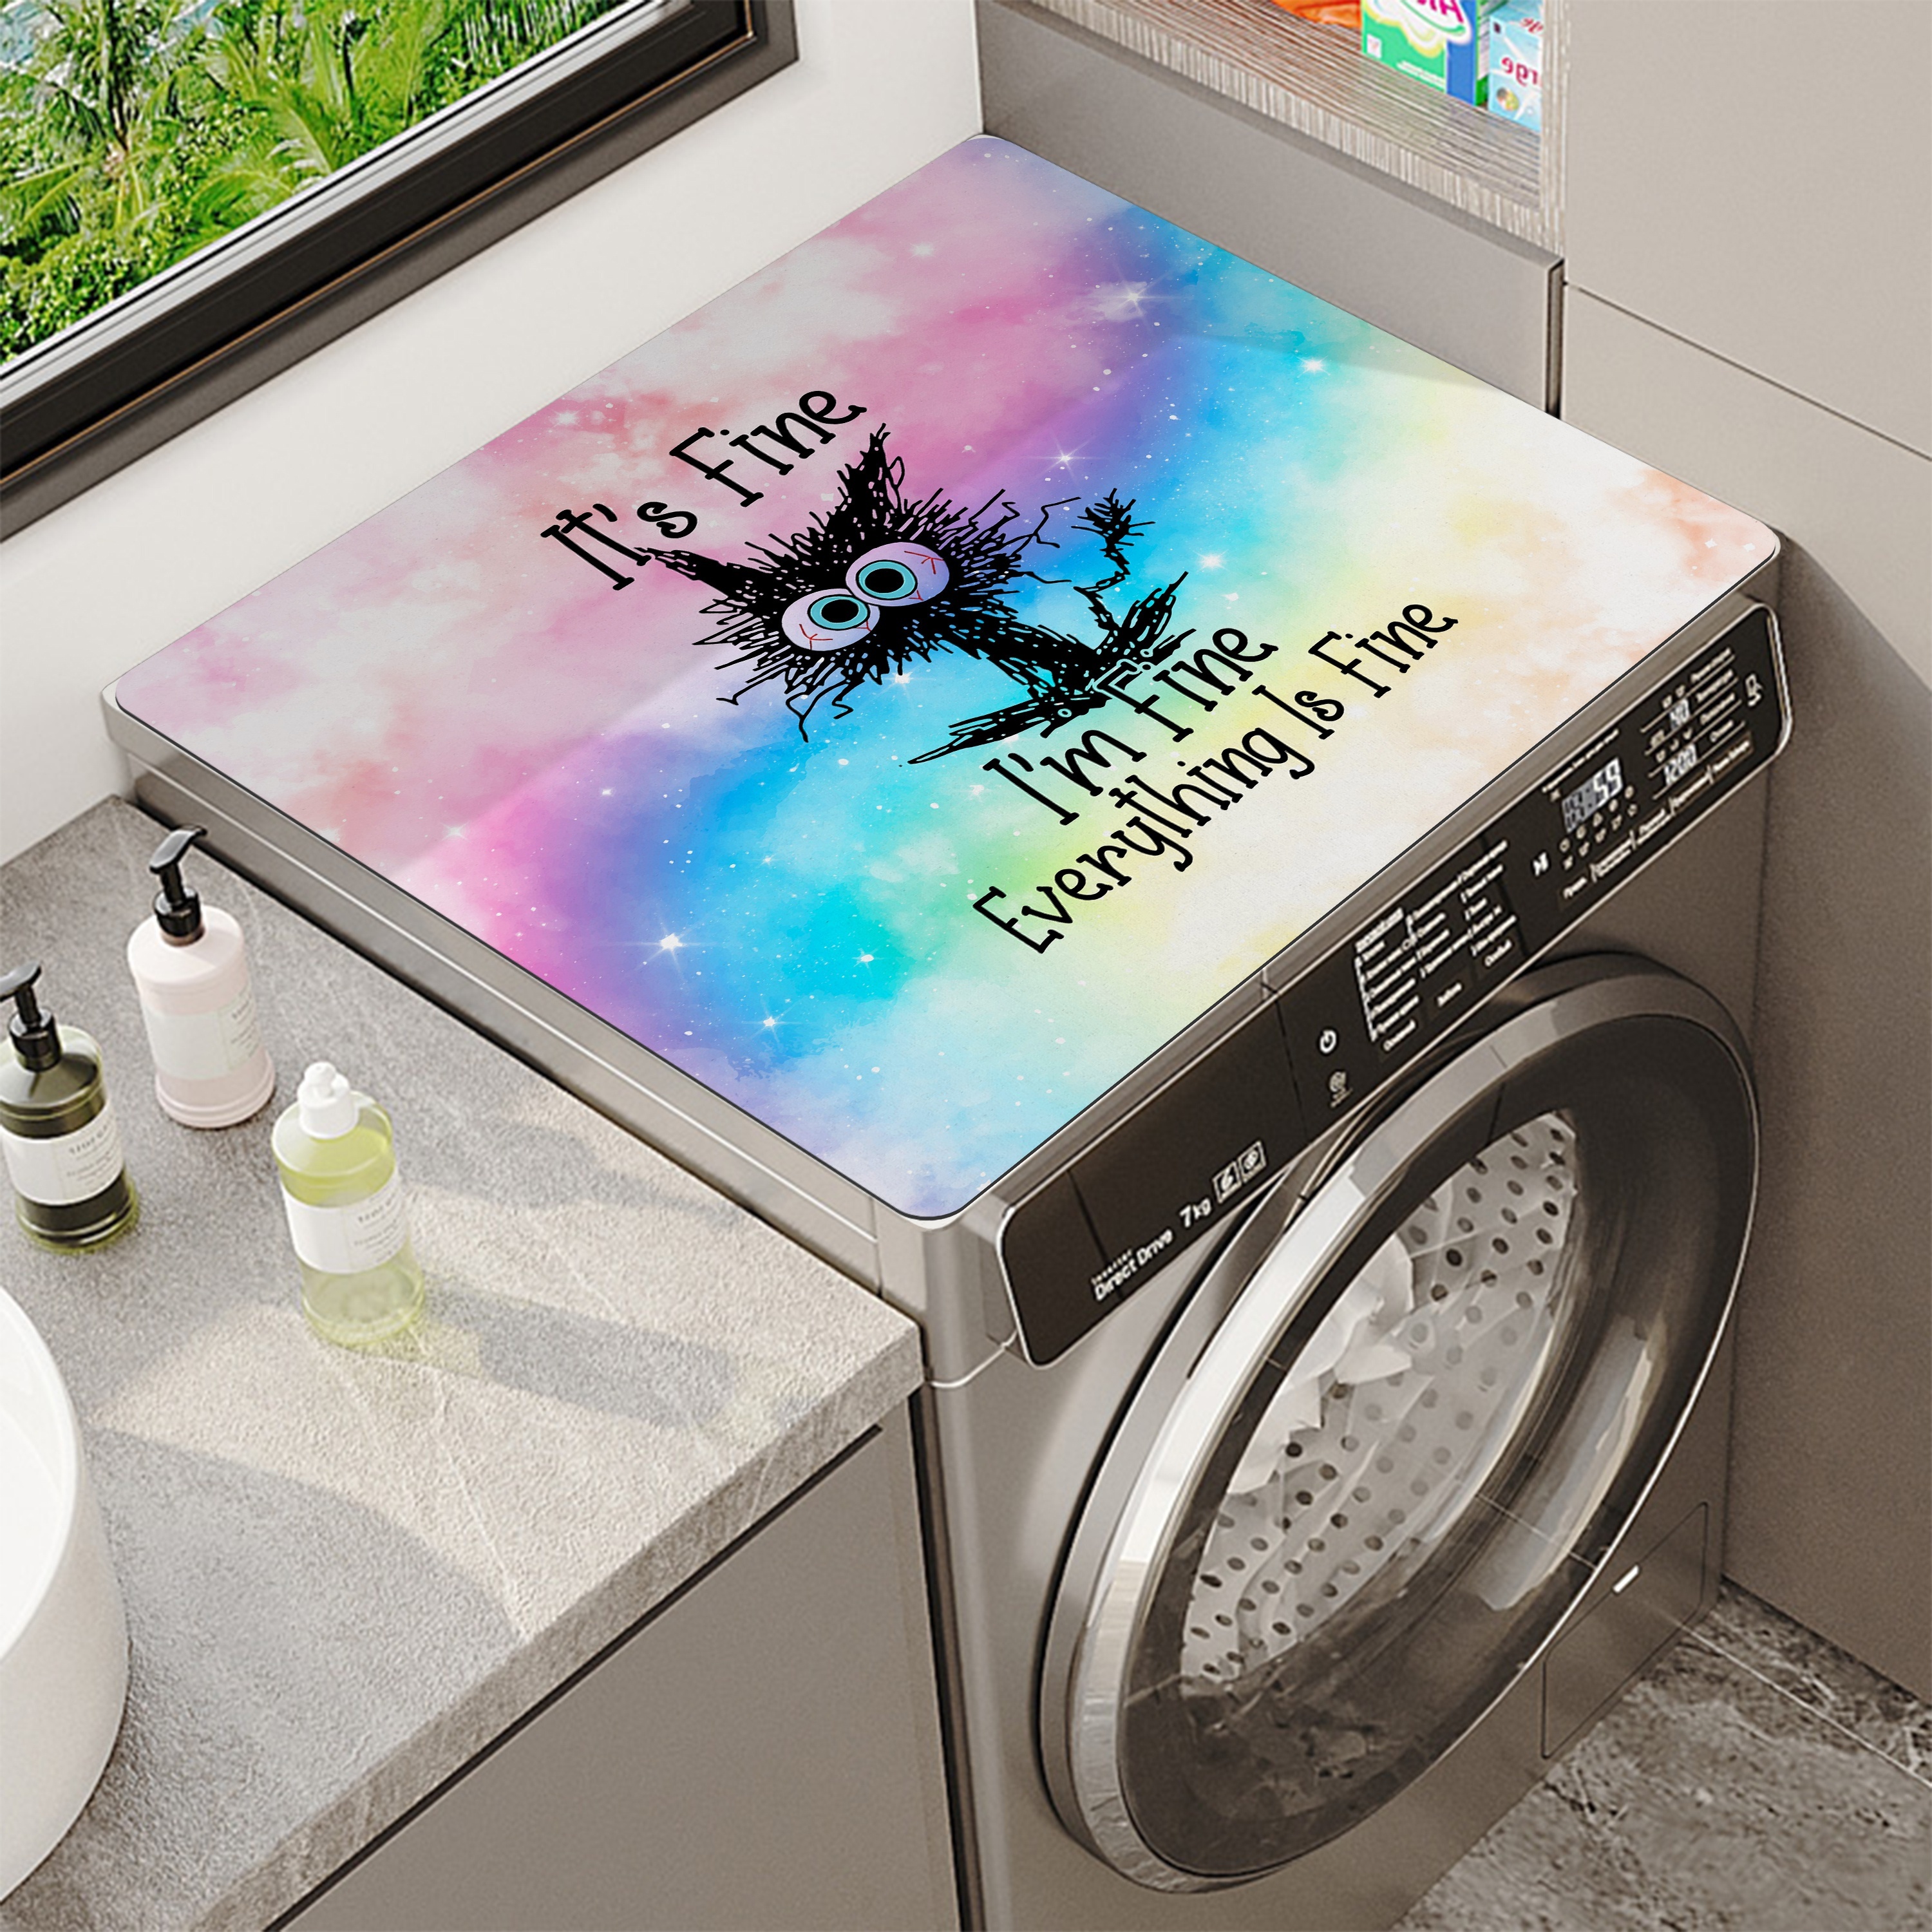 Kaufe Wc Vier Jahreszeiten Universal Matte Waschbar Cartoon Nette Wc Matte  Haushalt Wc Abdeckung Waschmaschine Reißverschluss Typ